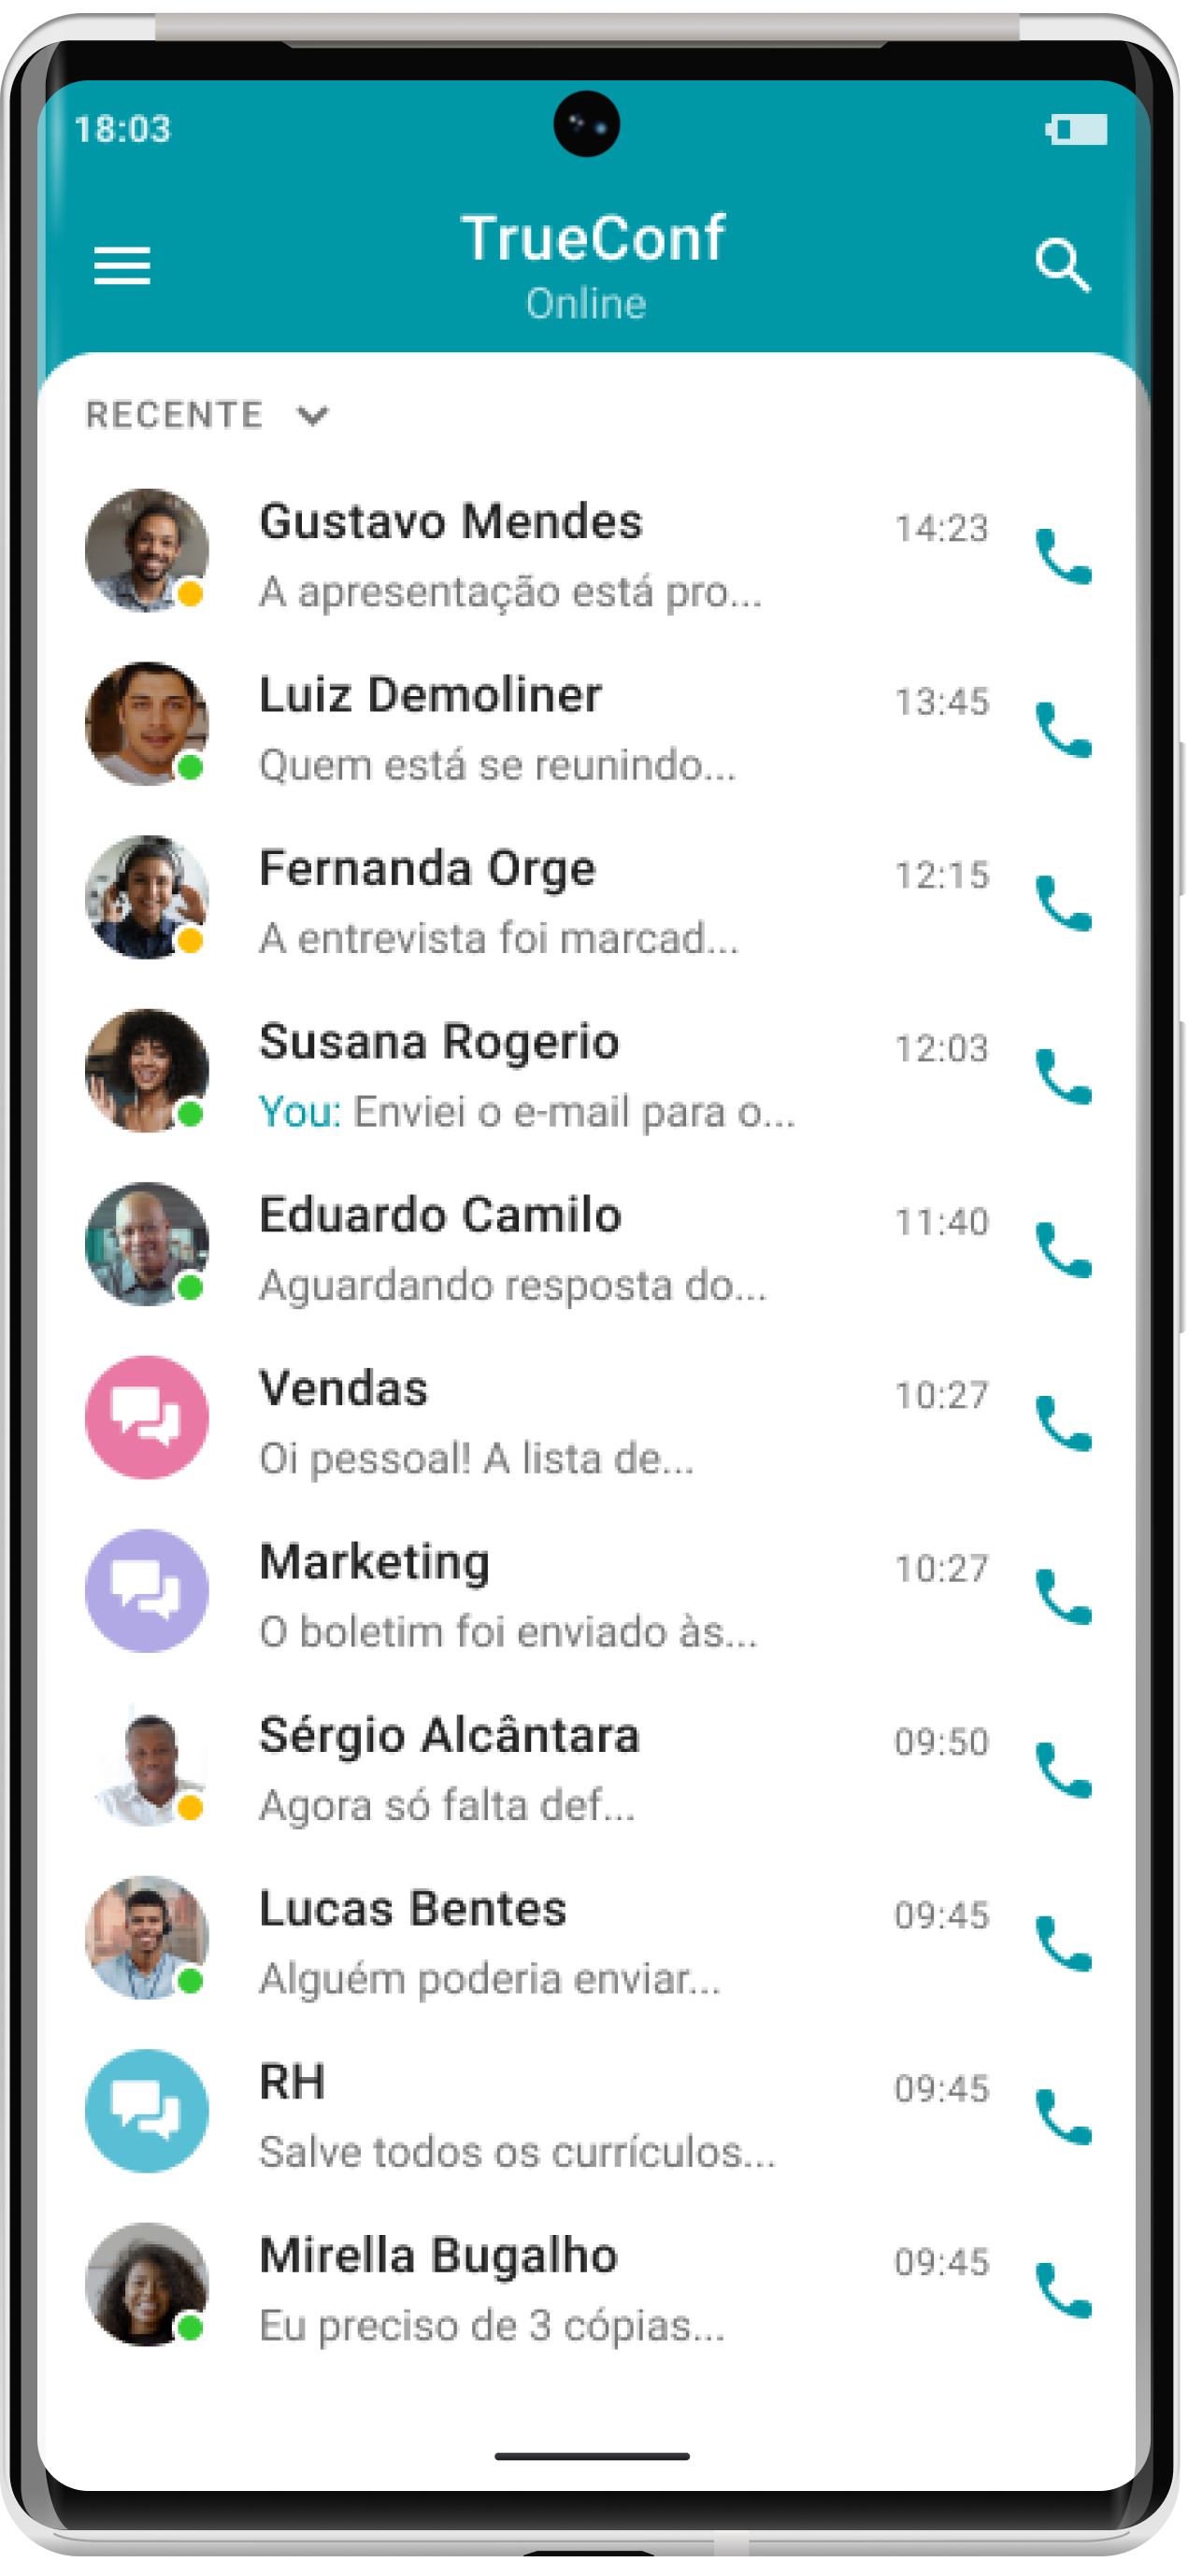 TrueConf 2.2 para Android: modo somente áudio e compartilhamento de arquivos 11